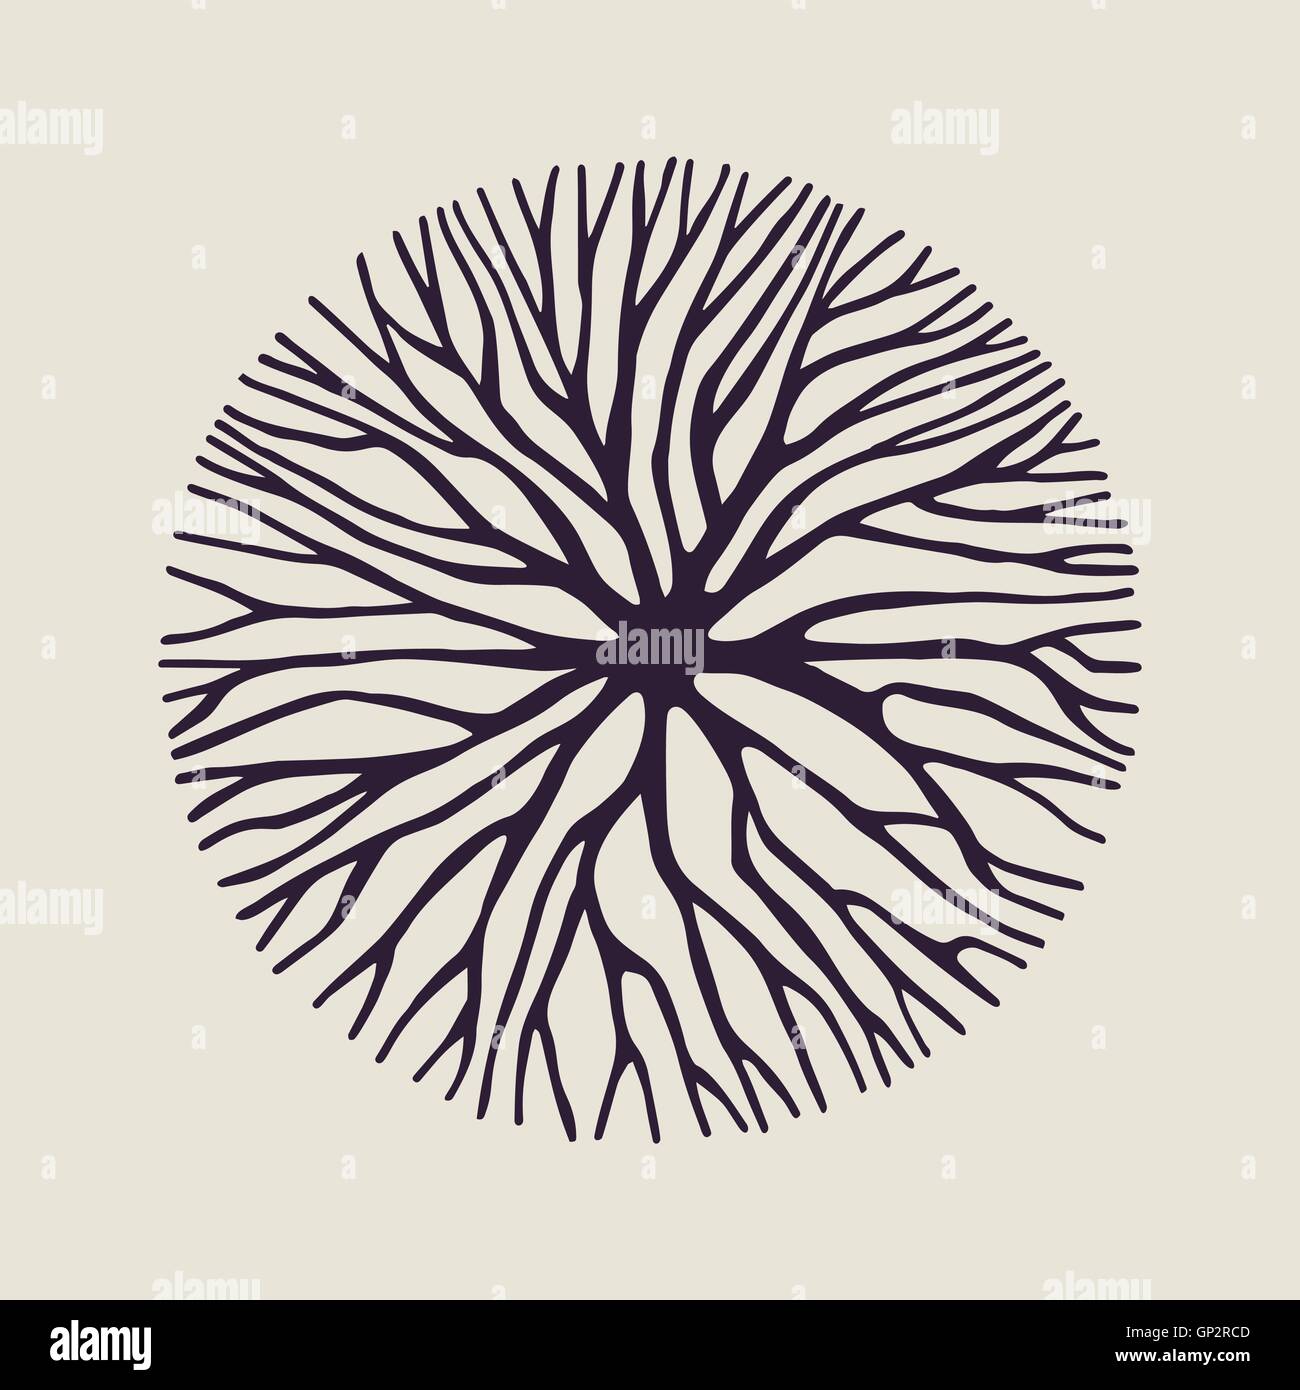 Abstract cerchio illustrazione dei rami degli alberi o delle radici per concept design, creative natura tecnica. EPS10 vettore. Illustrazione Vettoriale